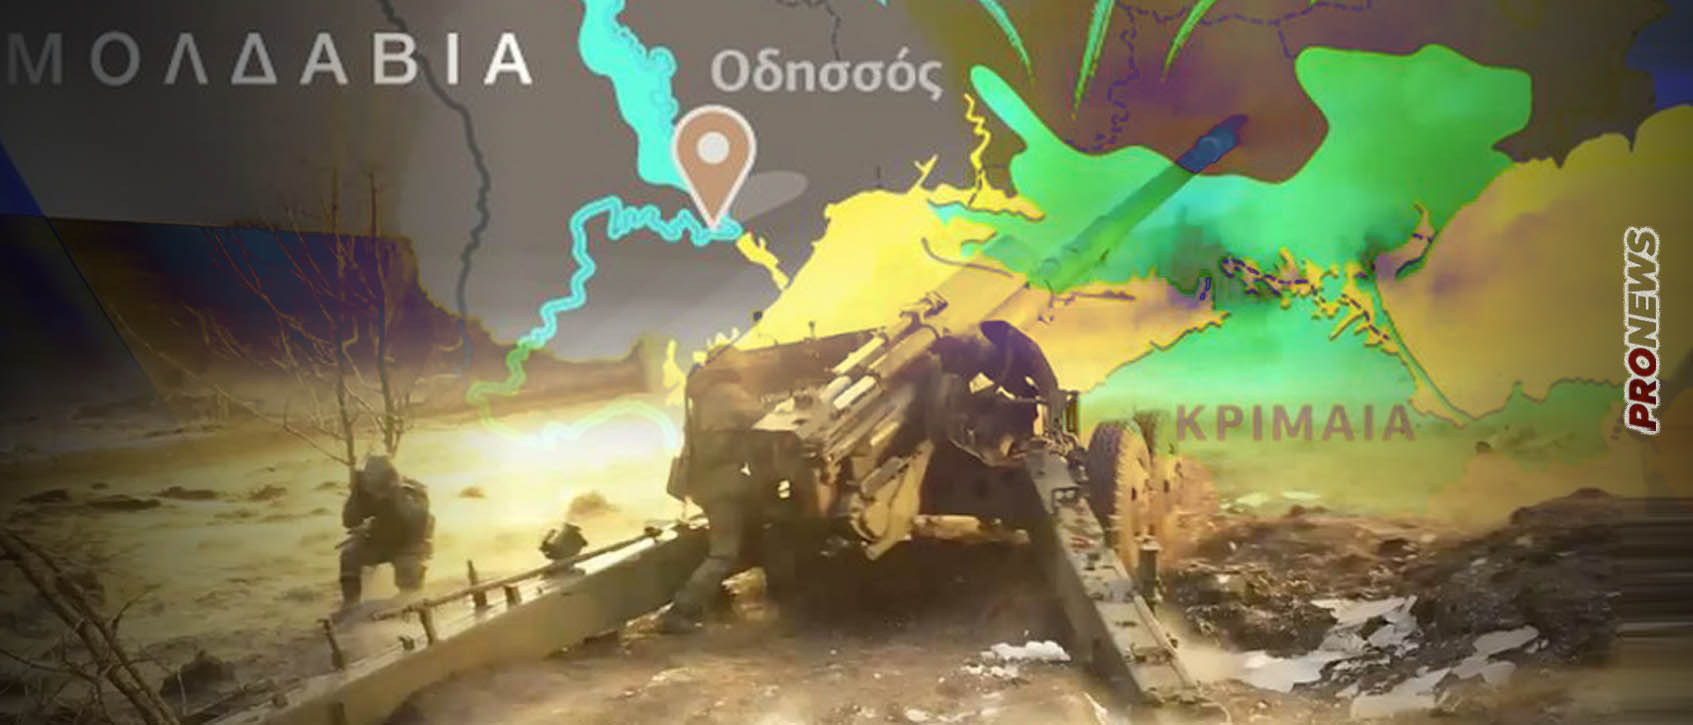 Ρωσία για Οδησσό: «Τα αποκαθηλωμένα μνημεία θα ξανατοποθετηθούν» – Βρετανική MI6: «Ο ρωσικός στρατός ετοιμάζεται για μεγάλη επίθεση»